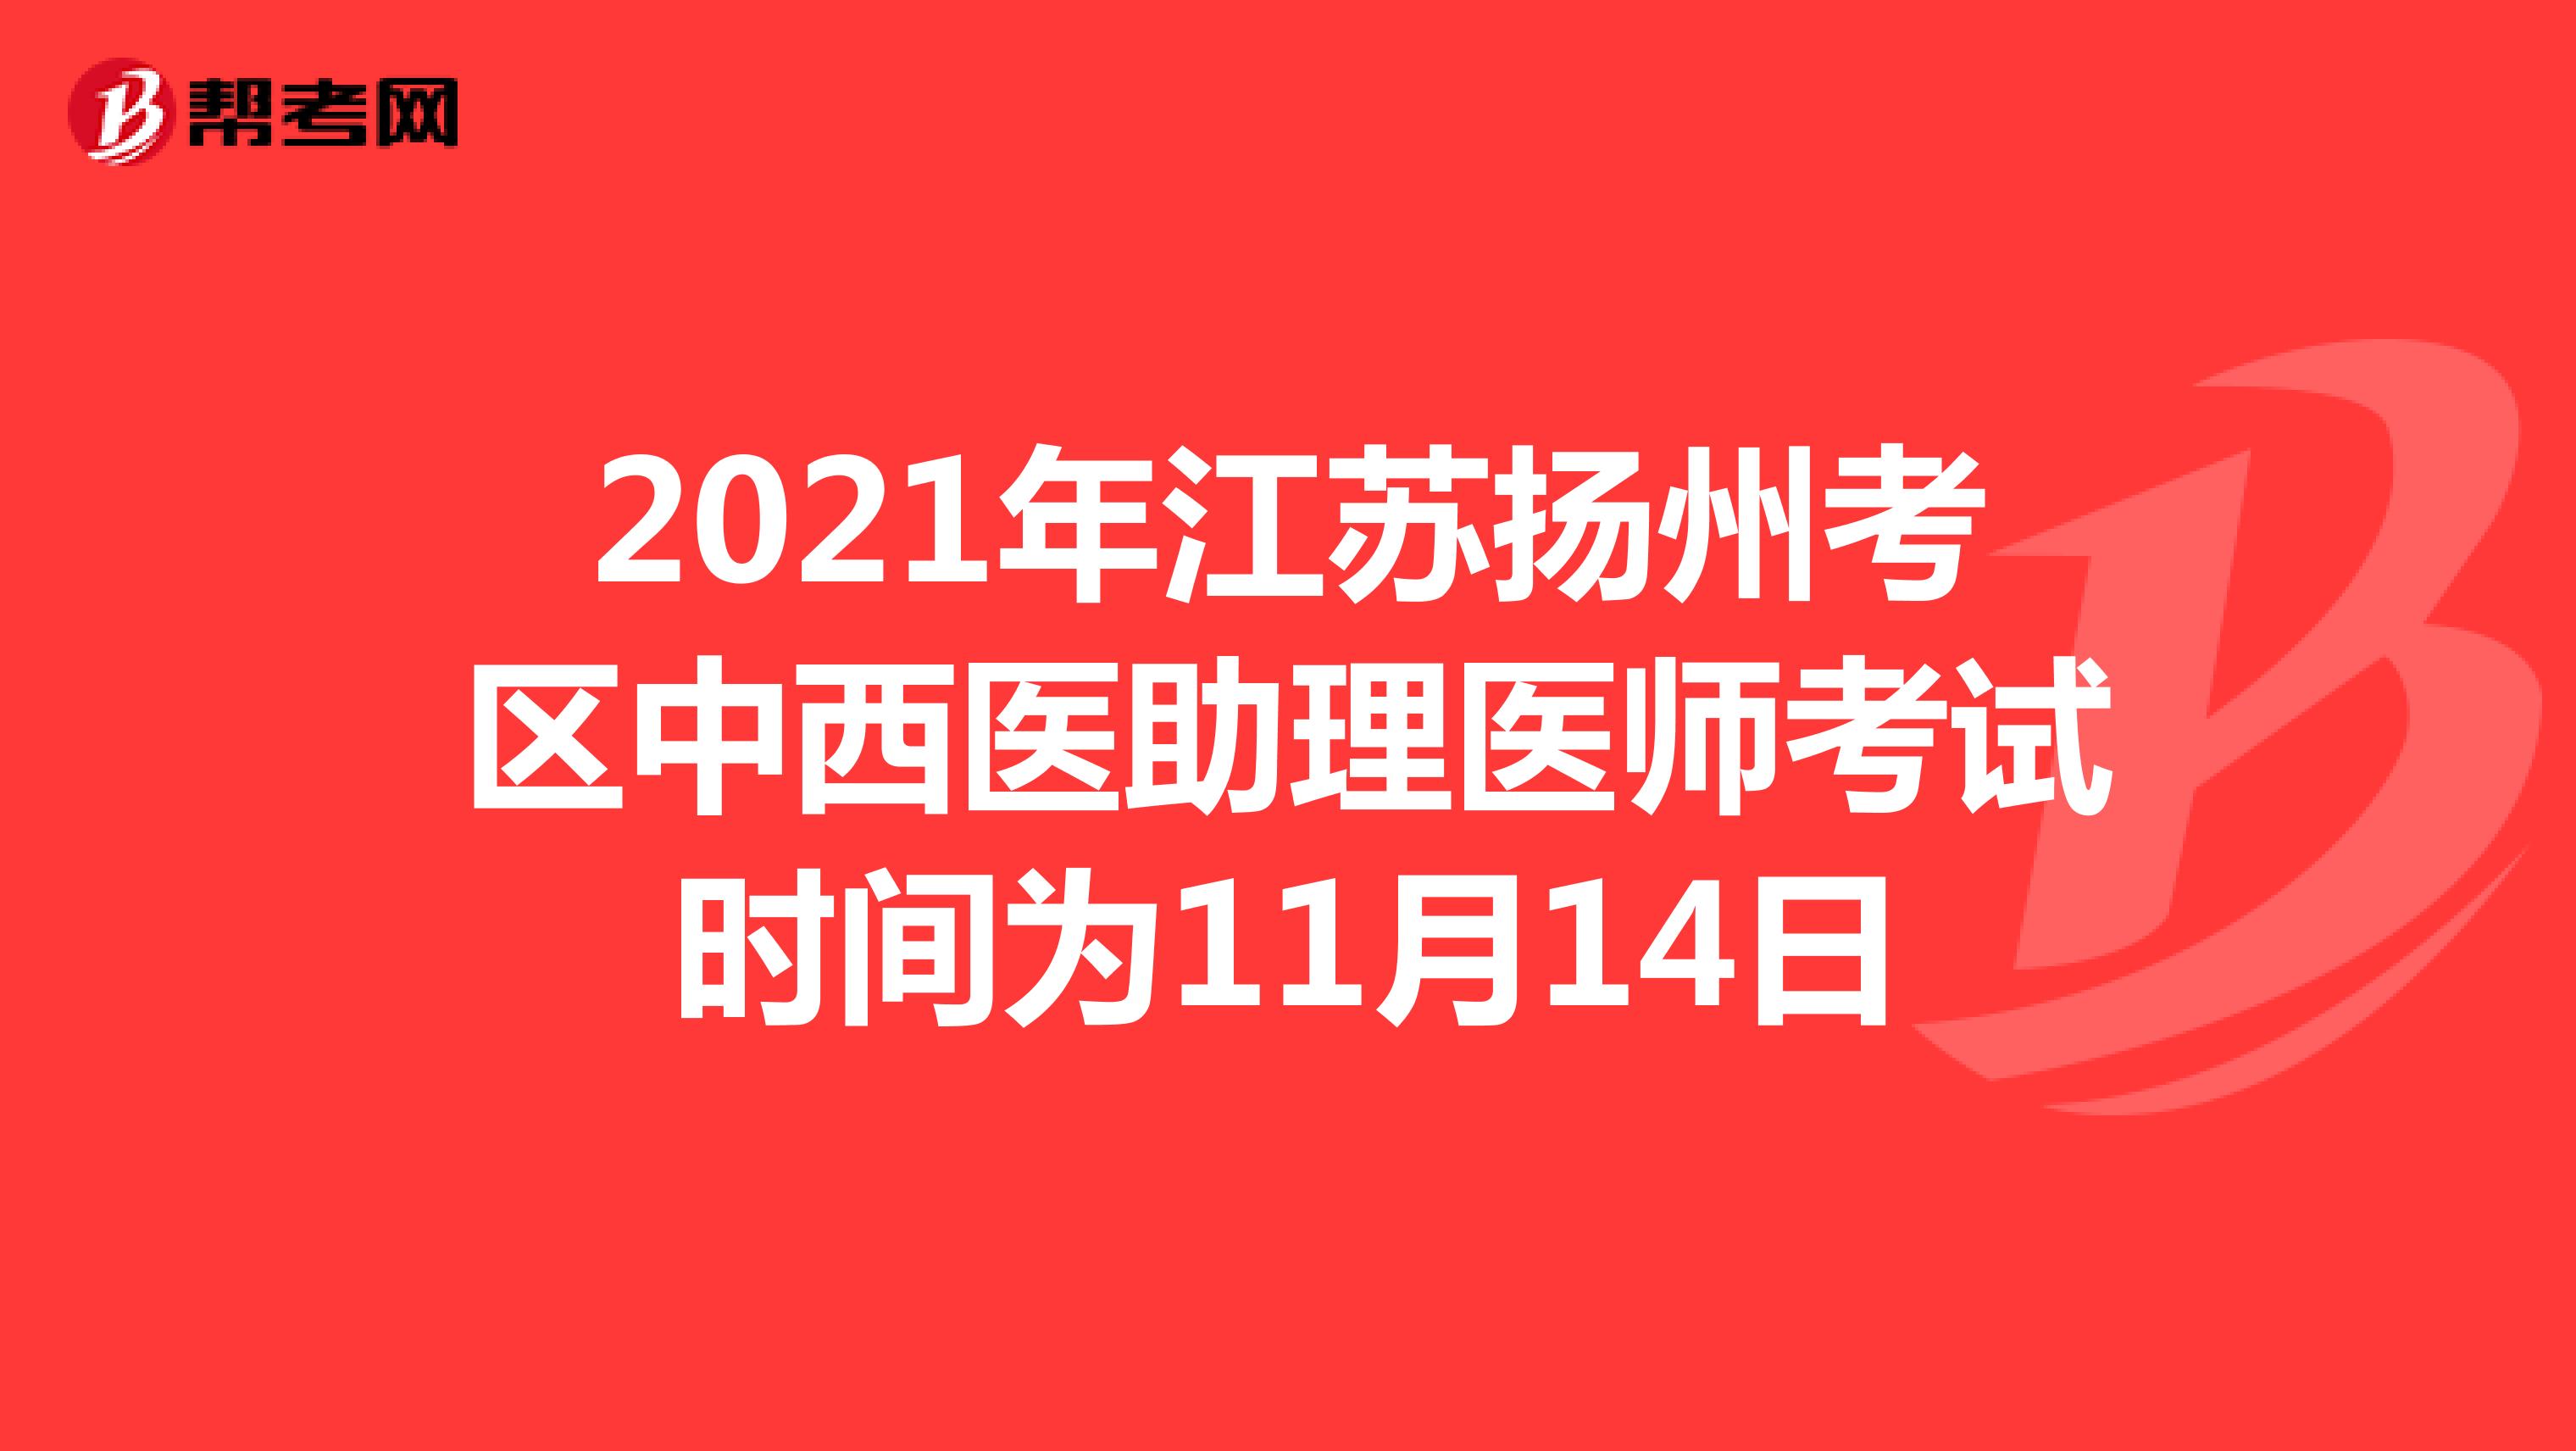 2021年江苏扬州考区中西医助理医师考试时间为11月14日